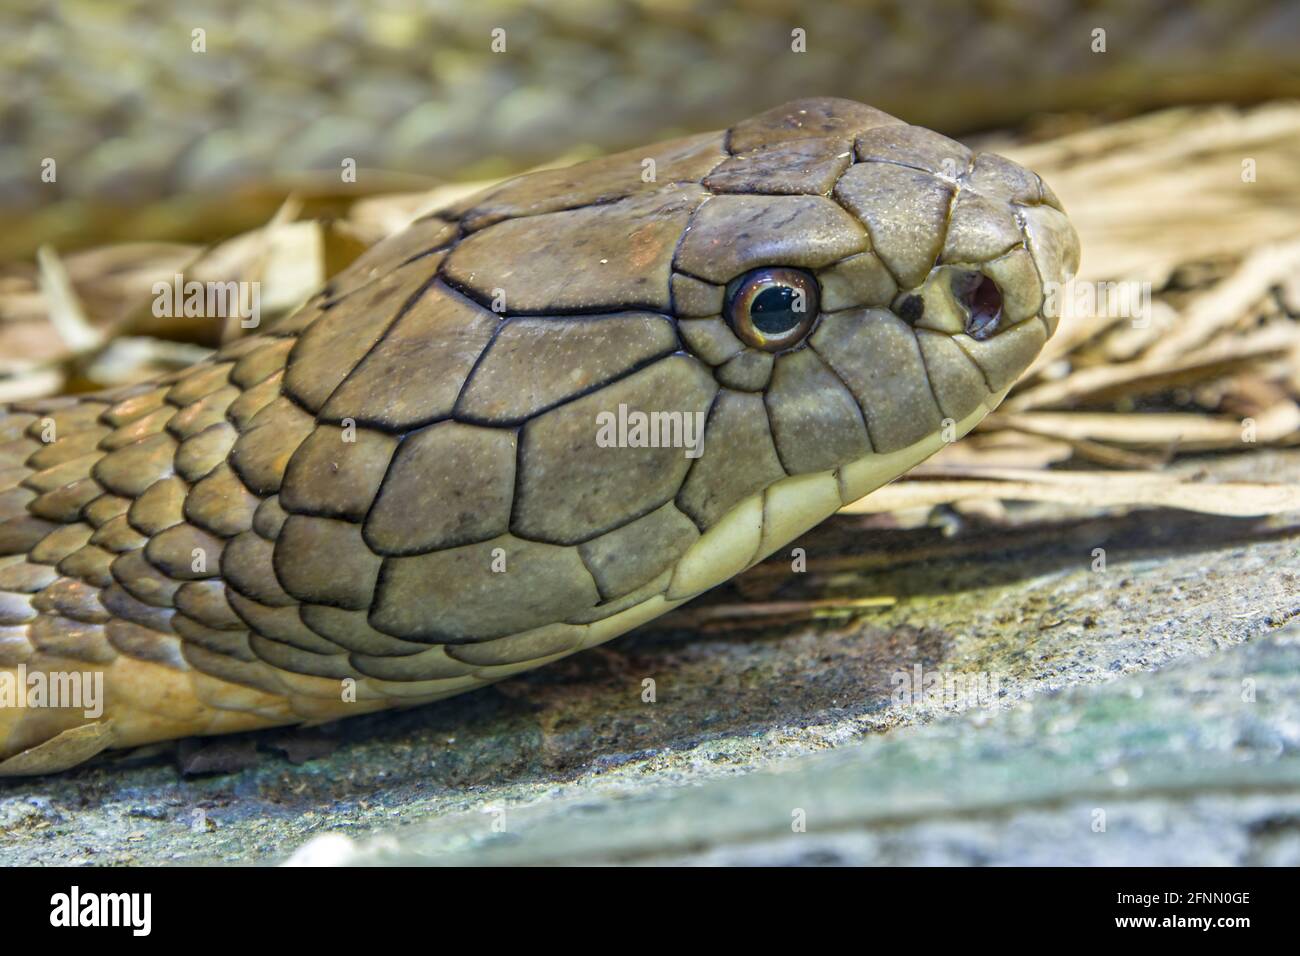 Le cobra roi (Ophiophage hannah) est un grand atravers endémique aux forêts de l'Inde à travers l'Asie du Sud-est. C'est le serpent venimeux le plus long au monde. Banque D'Images